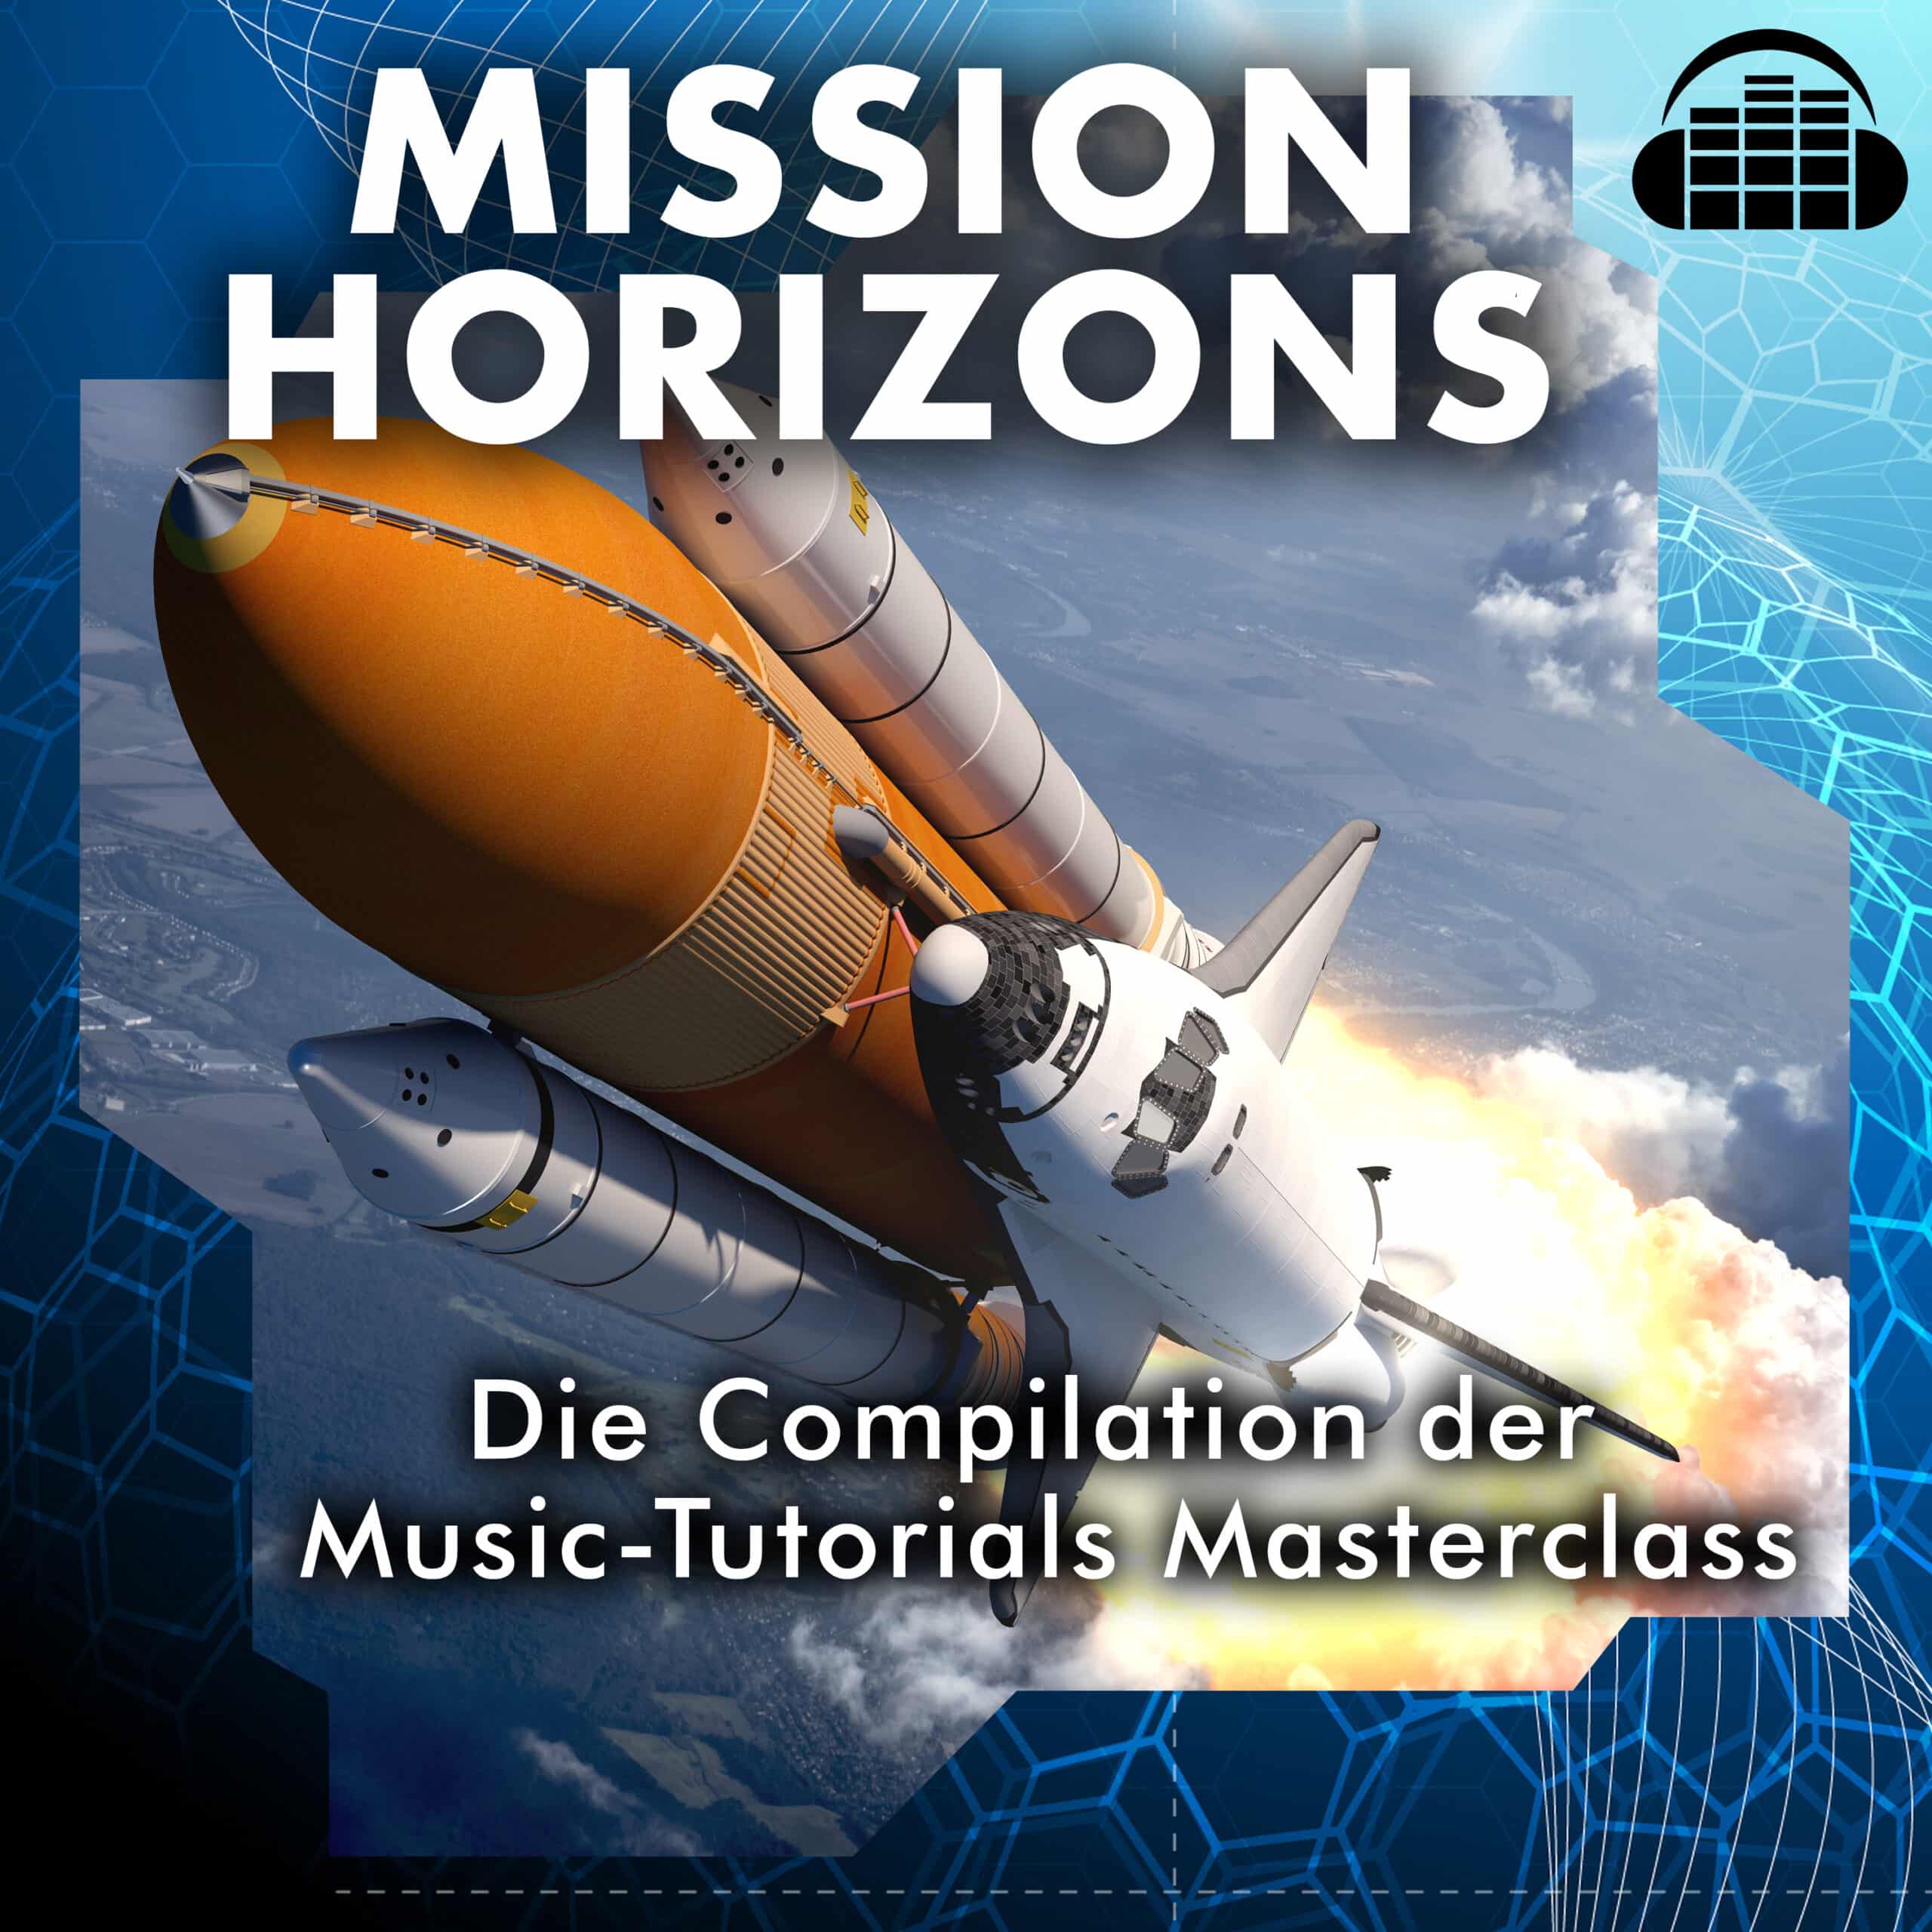 Compilation  der Masterclass von Music Tutorials - Mission Horizons